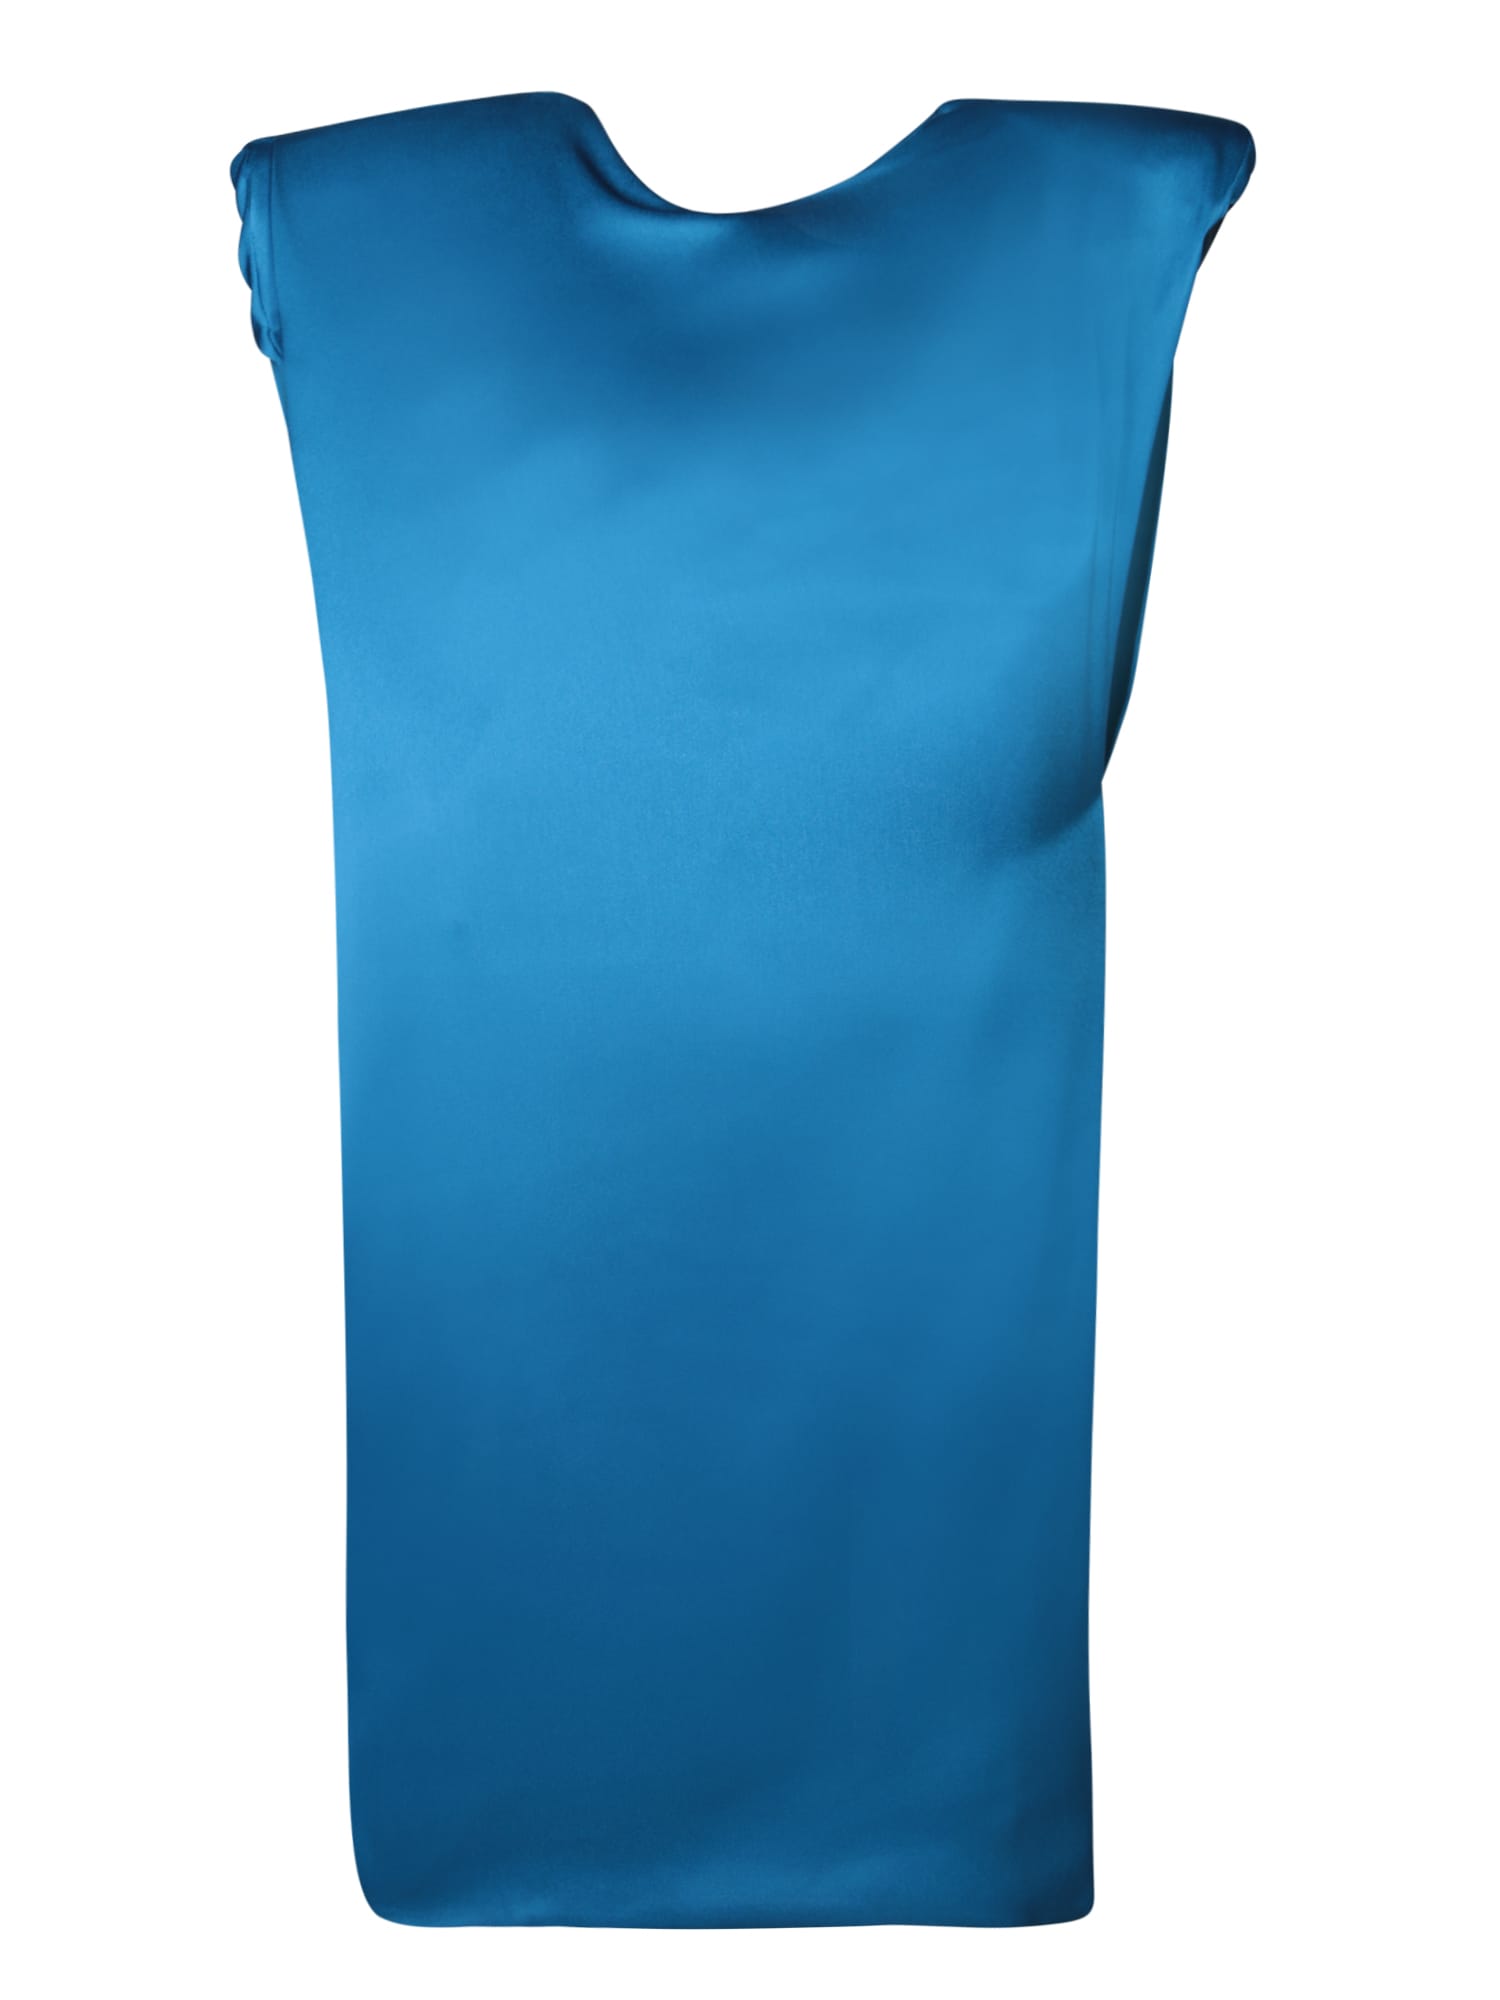 Ayla Shoulder Pad Blue Dress By Rev